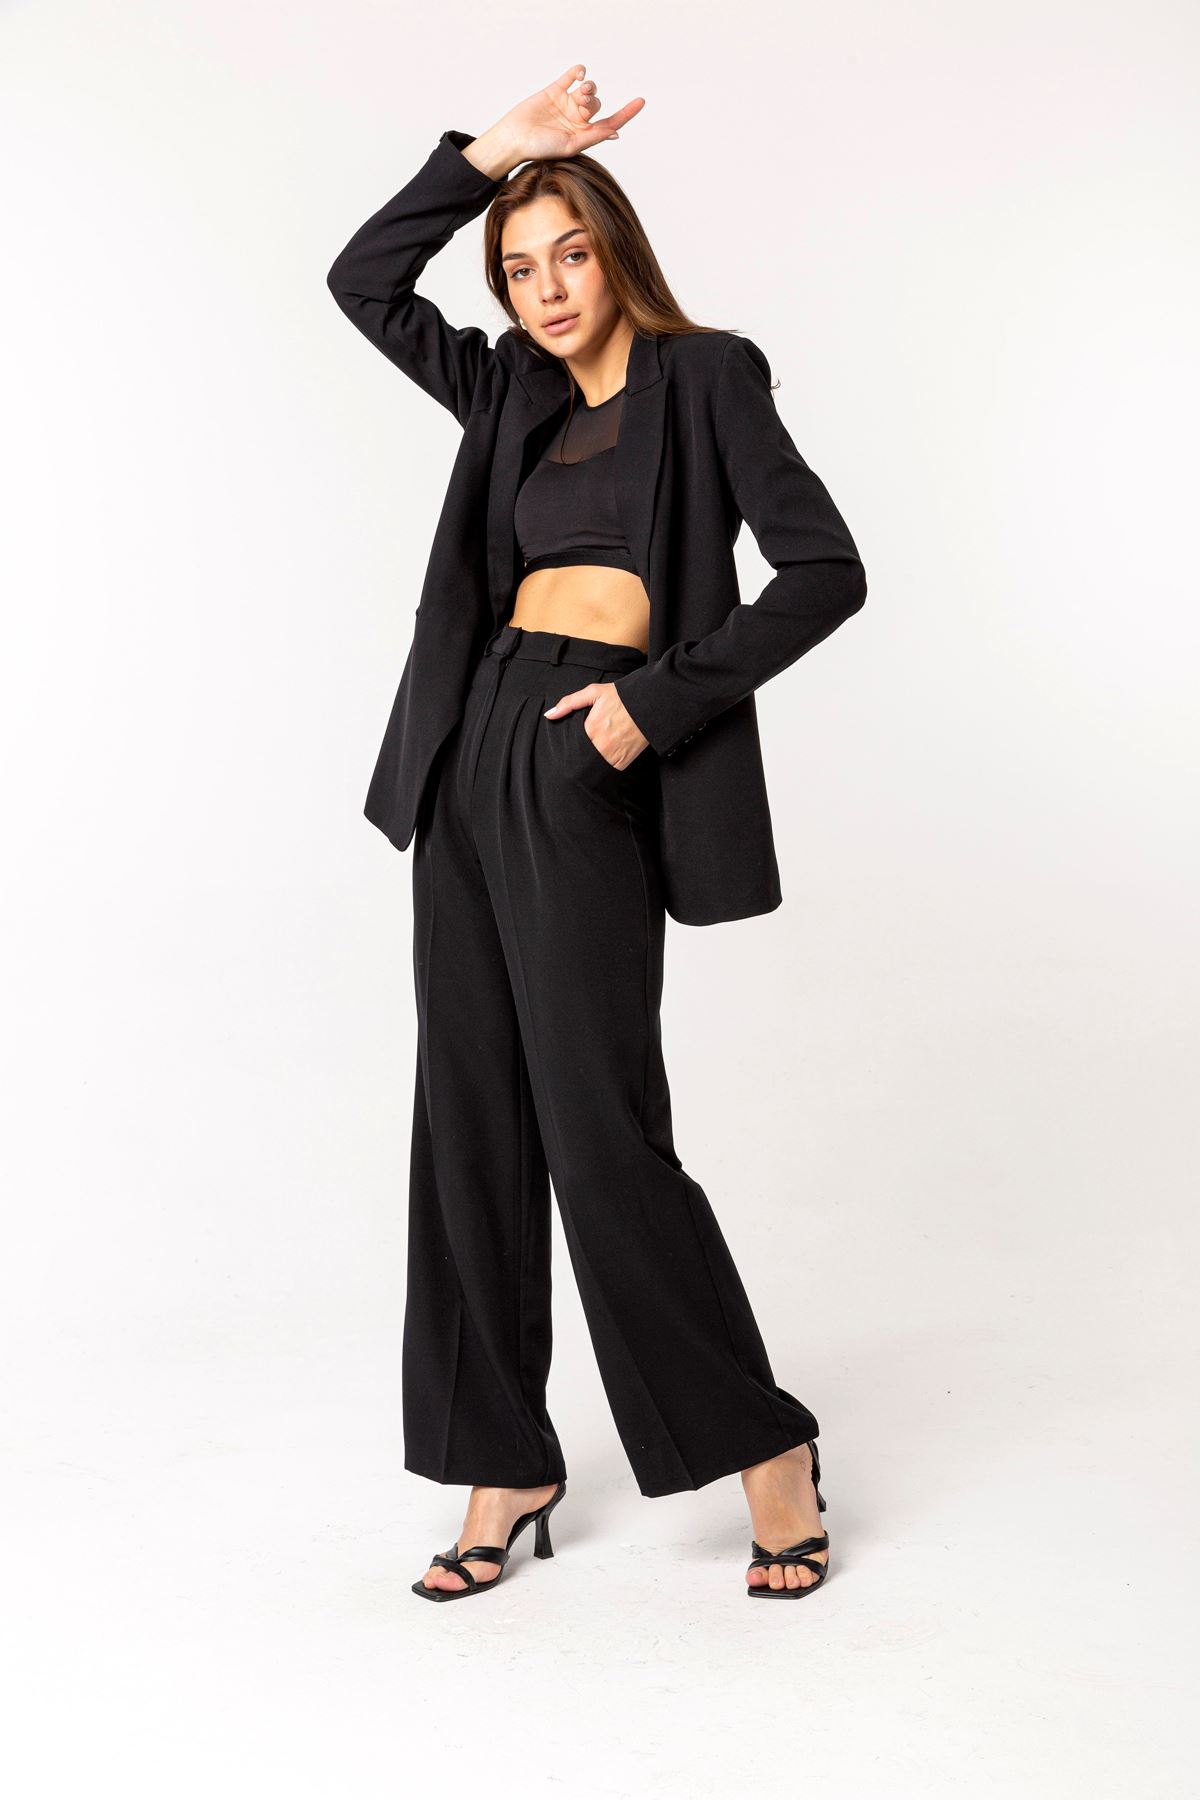 атласный ткань длинный рукав джоггеры женский пиджак - Чёрный